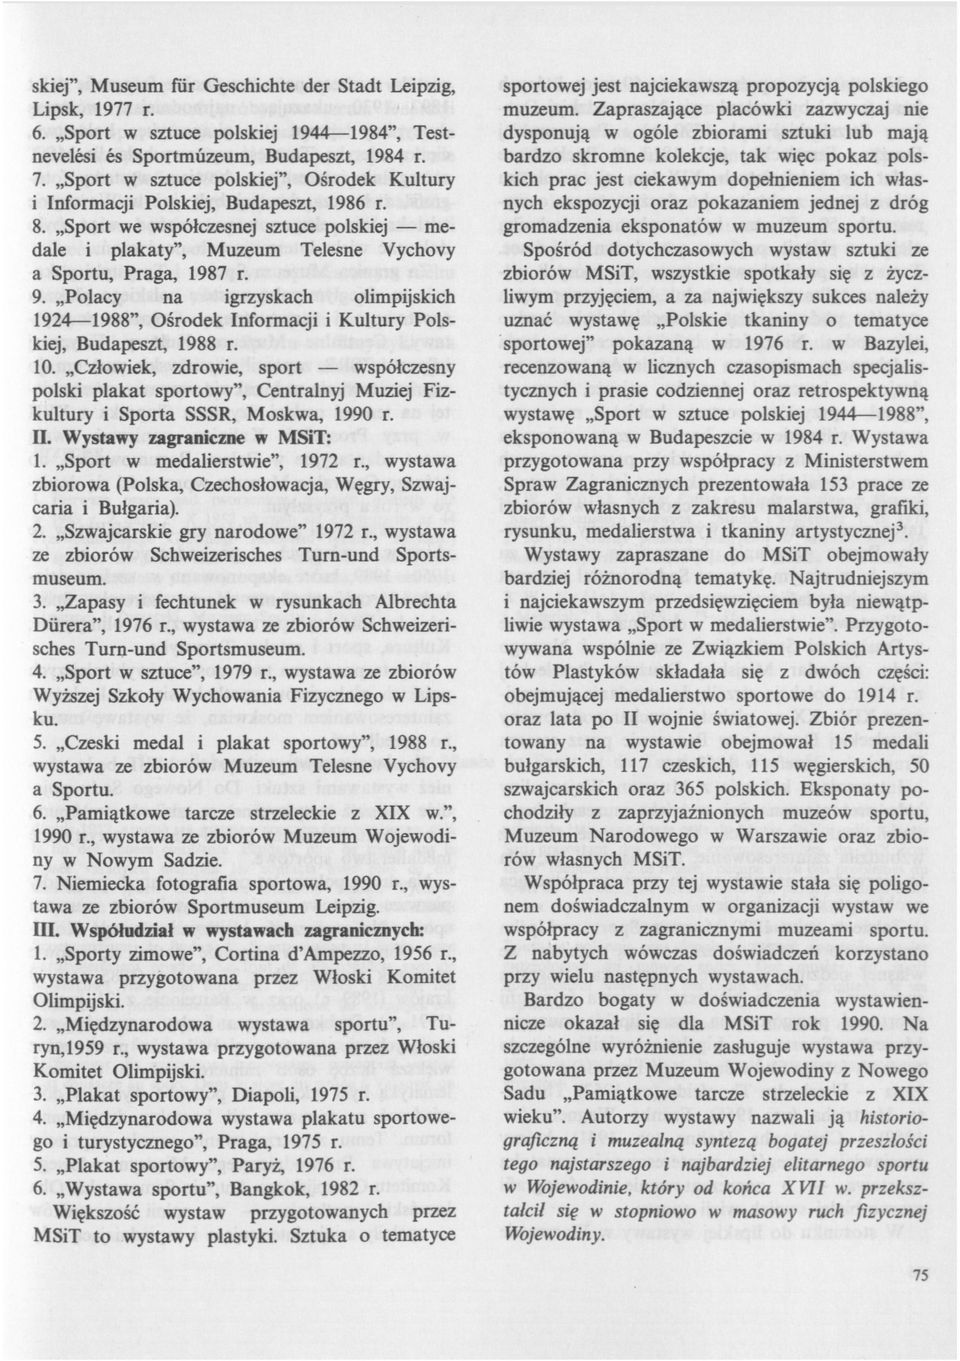 Polacy na igrzyskach olimpijskich 1924 1988", Ośrodek Informacji i Kultury Polskiej, Budapeszt, 1988 r. 10.